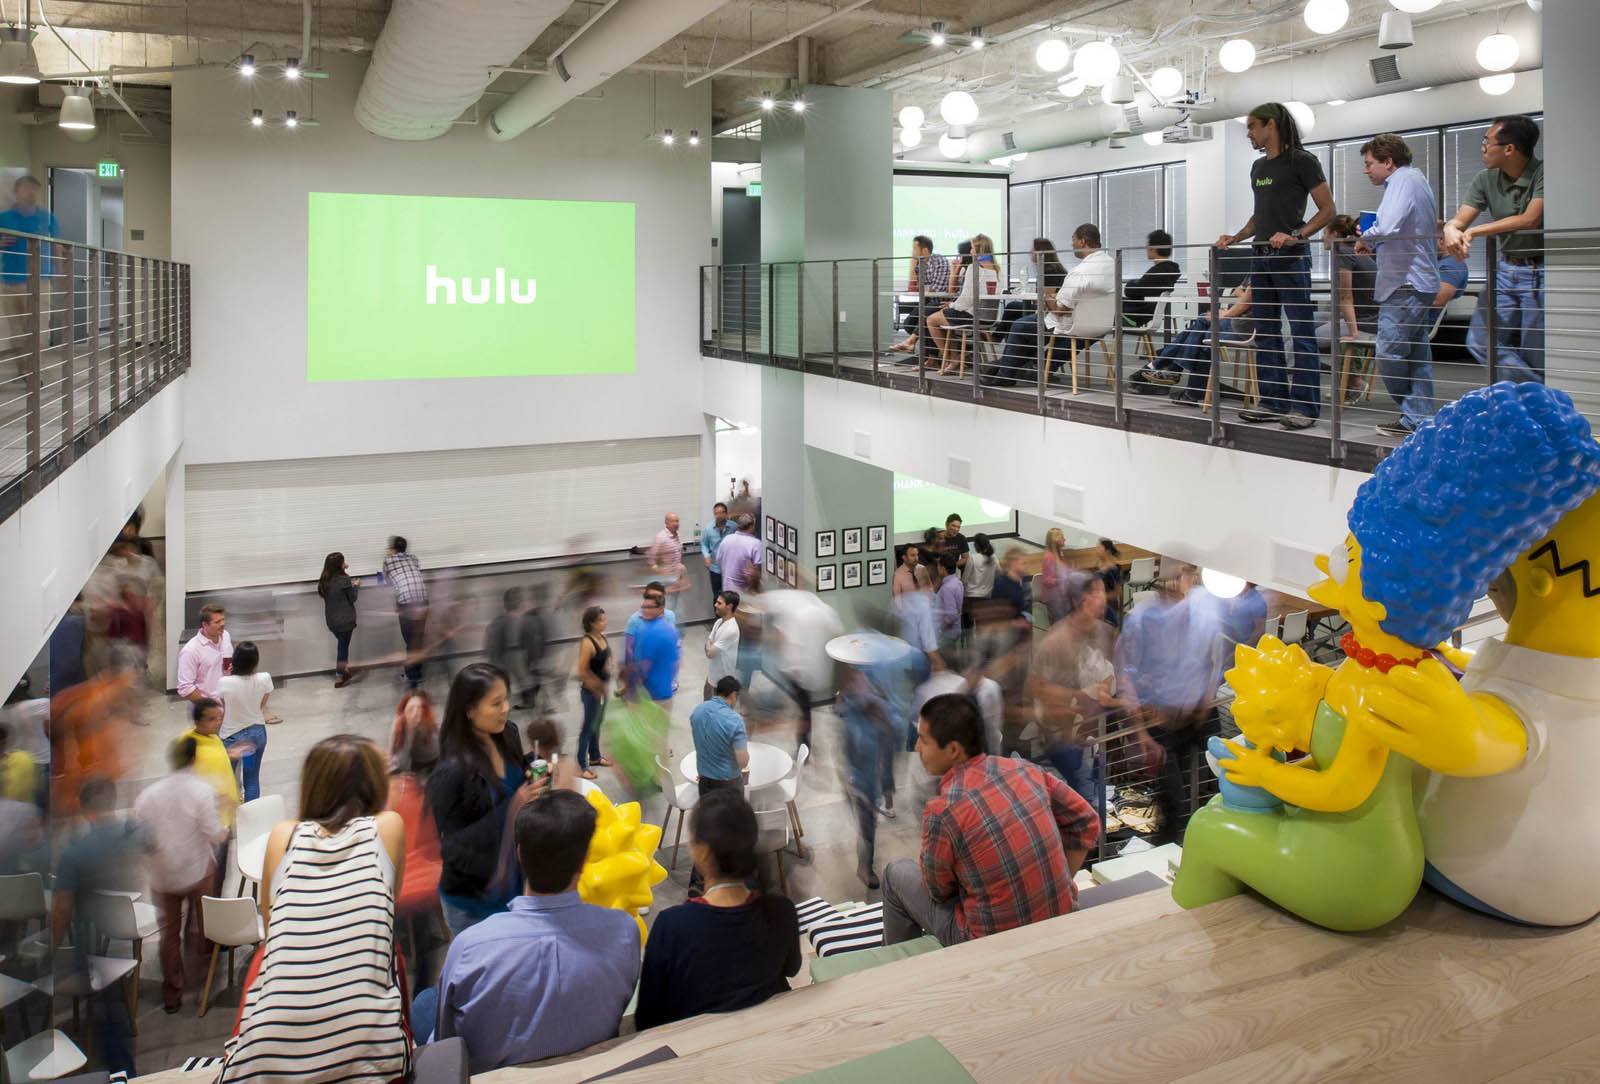 A Peek Inside Hulu’s Santa Monica Office